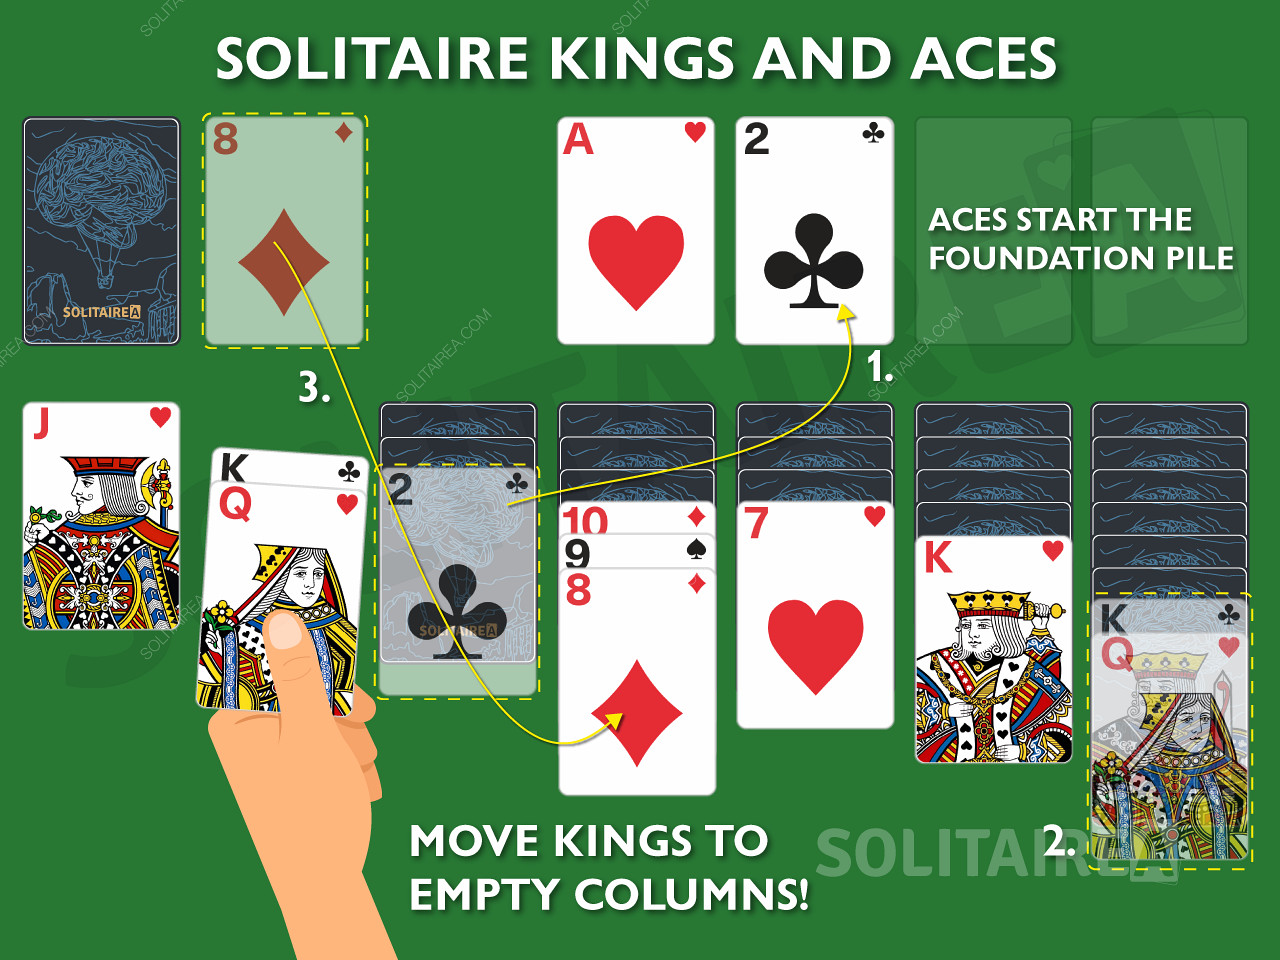 Los reyes y los ases son cartas importantes en el Solitario ya que se les permiten movimientos únicos.